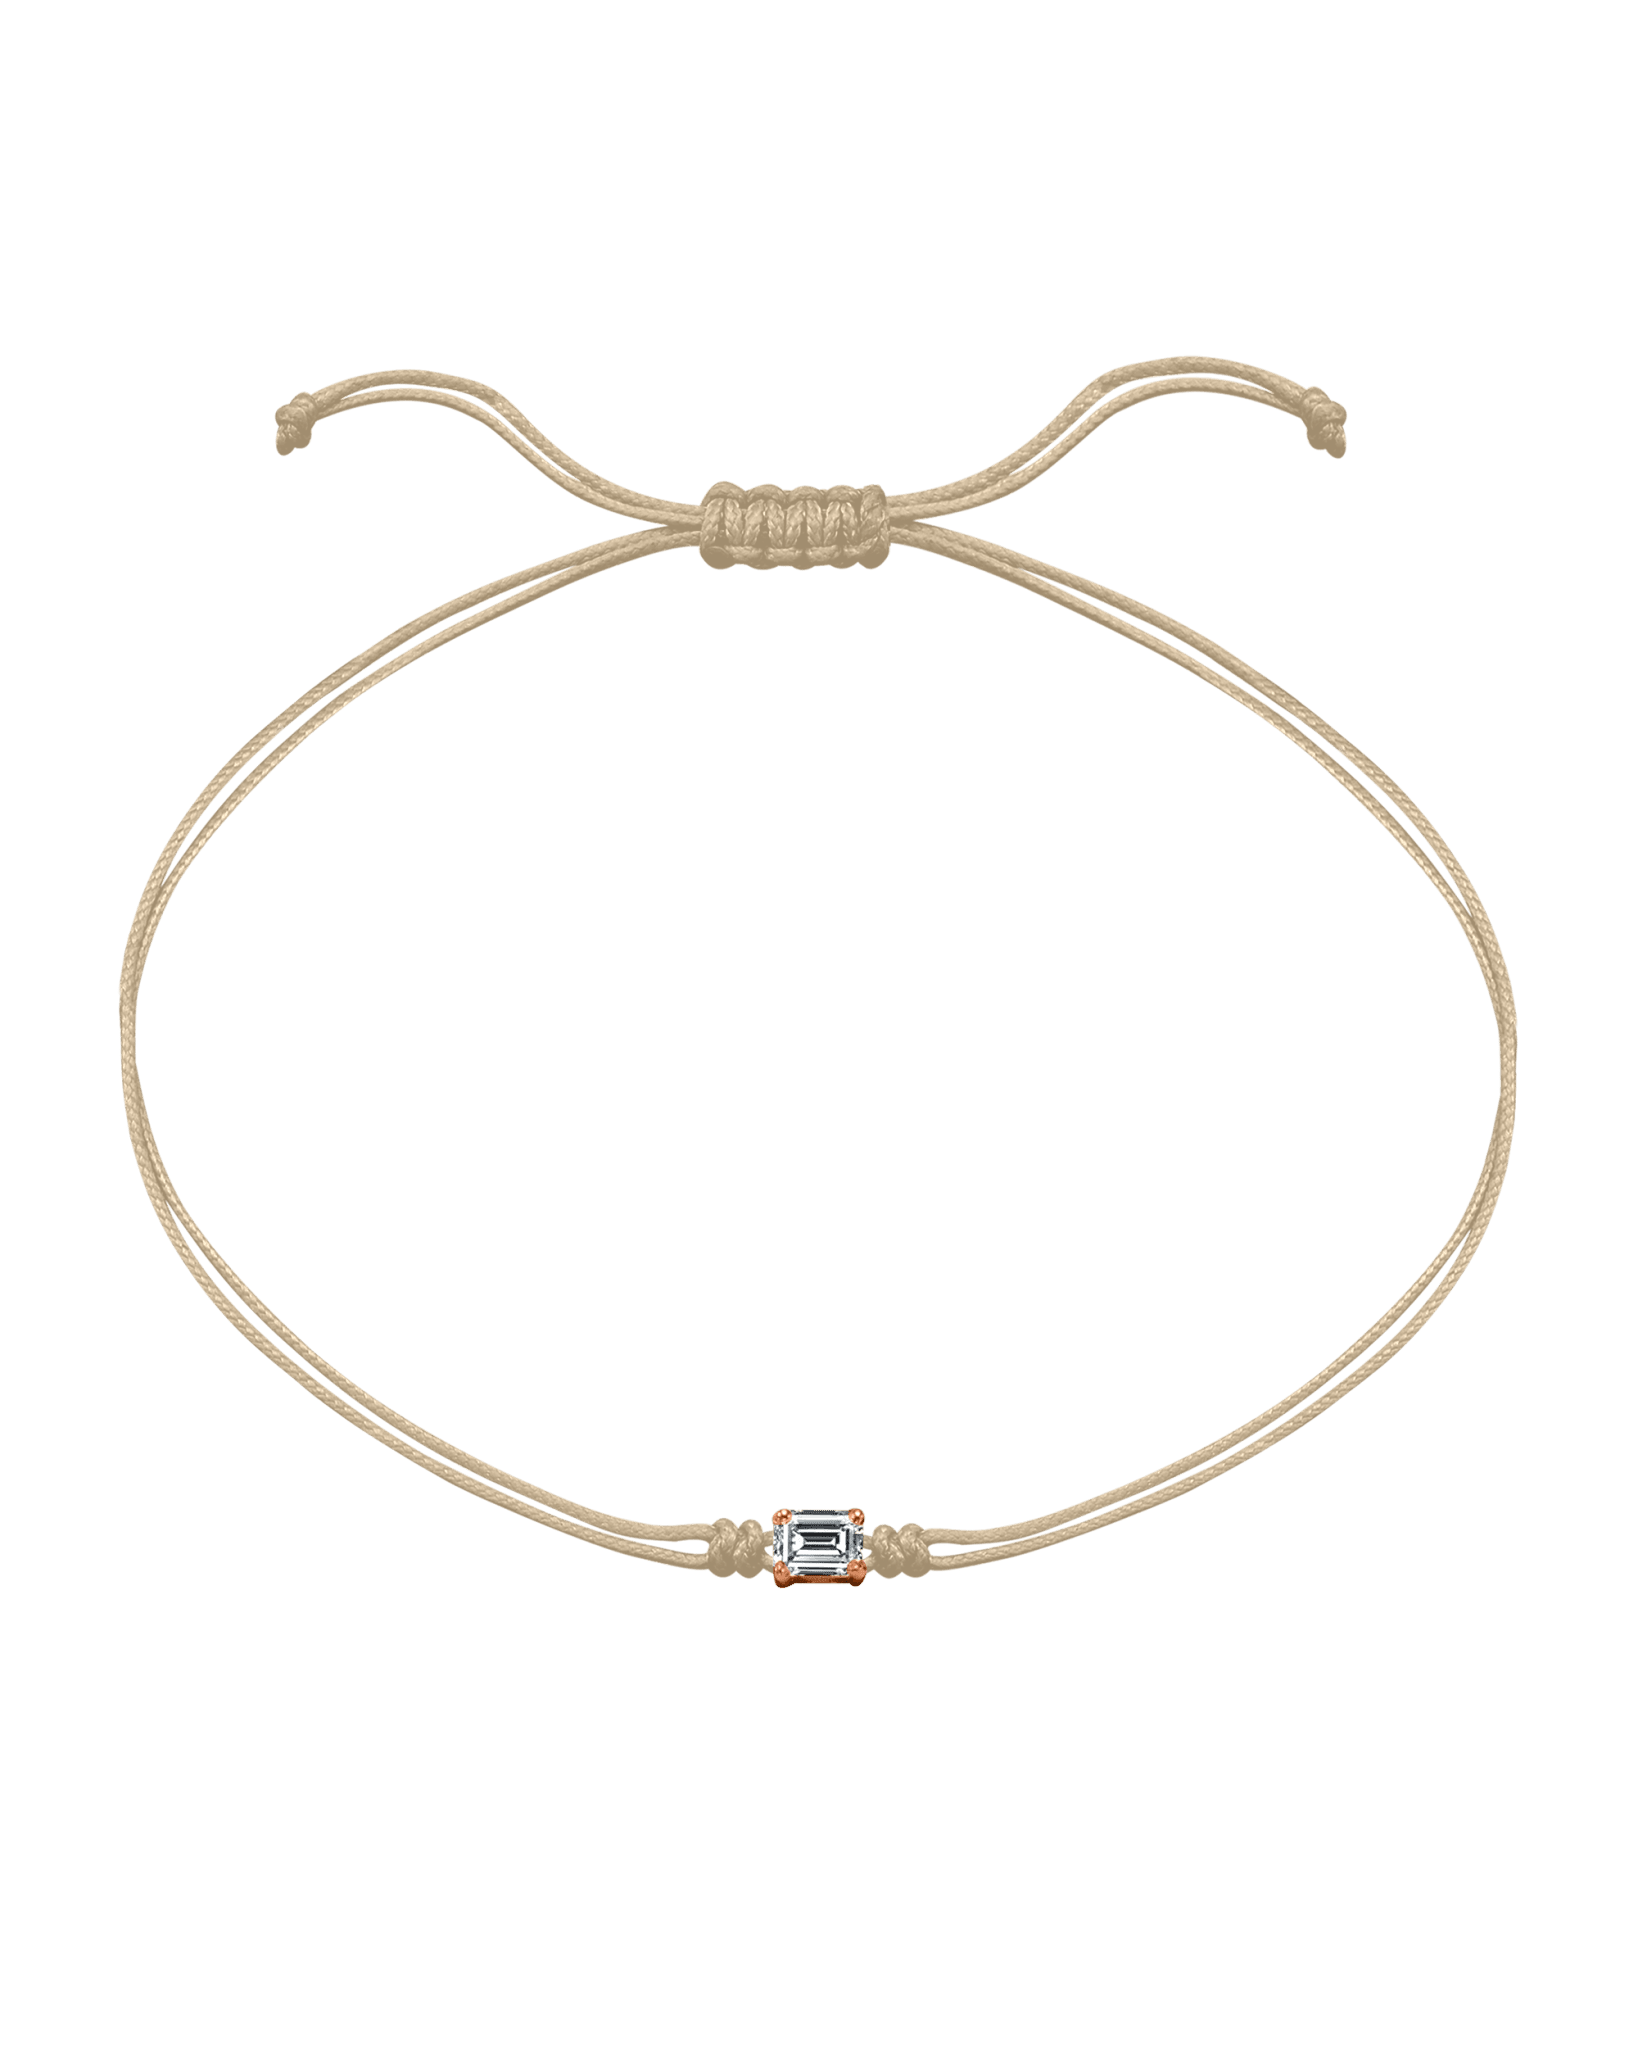 Emerald Diamond String Of Love - 14K Rose Gold Bracelets 14K Solid Gold Beige 